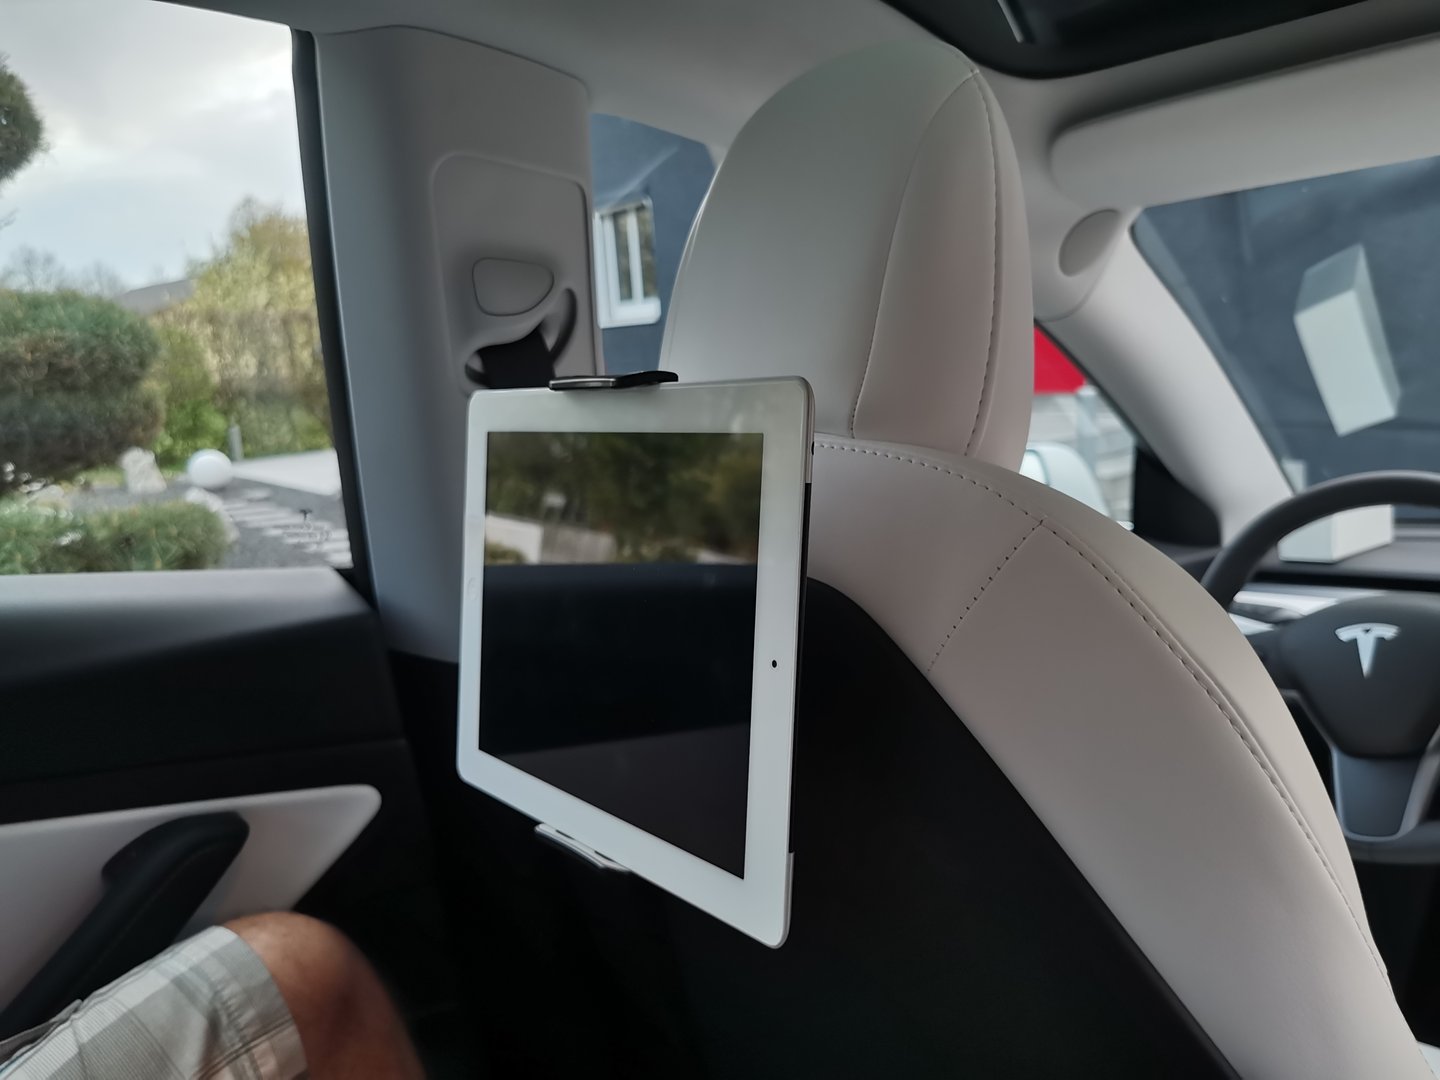 Tablet-Halterung für Kids auf der Rückbank - Model 3 Allgemeines - TFF  Forum - Tesla Fahrer & Freunde